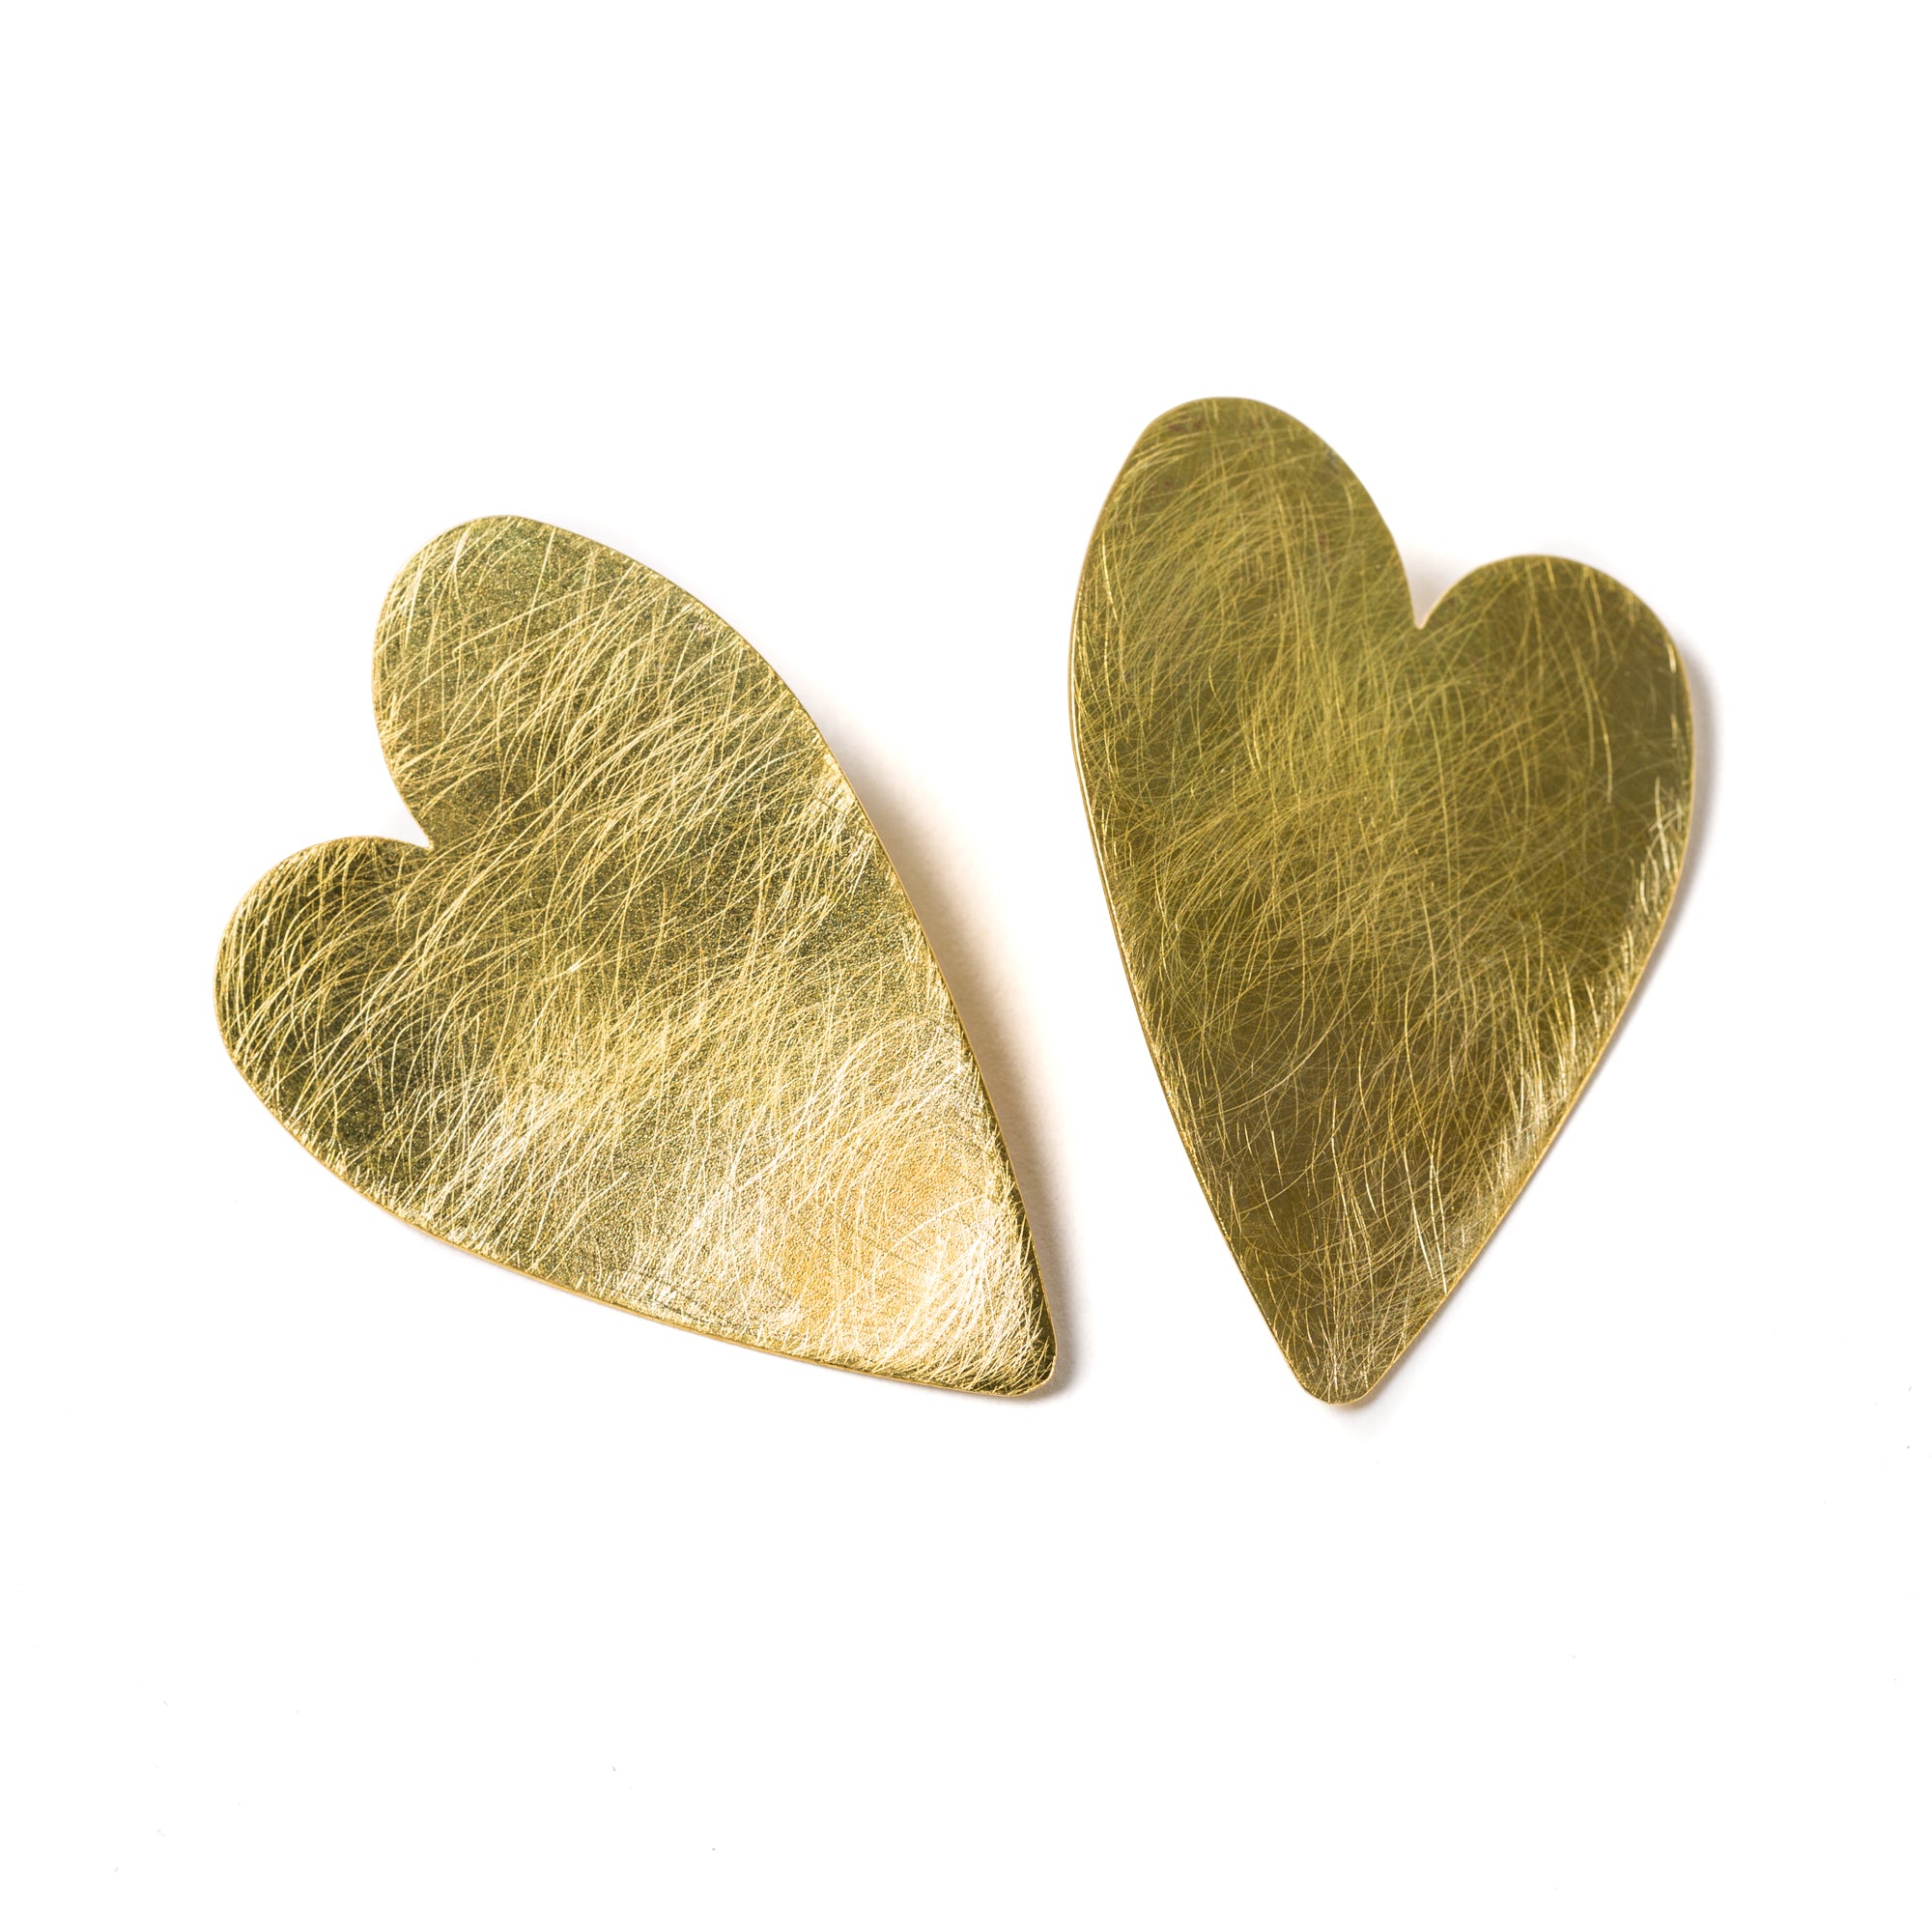 Alice's heart Earrings Gold-plated lobe